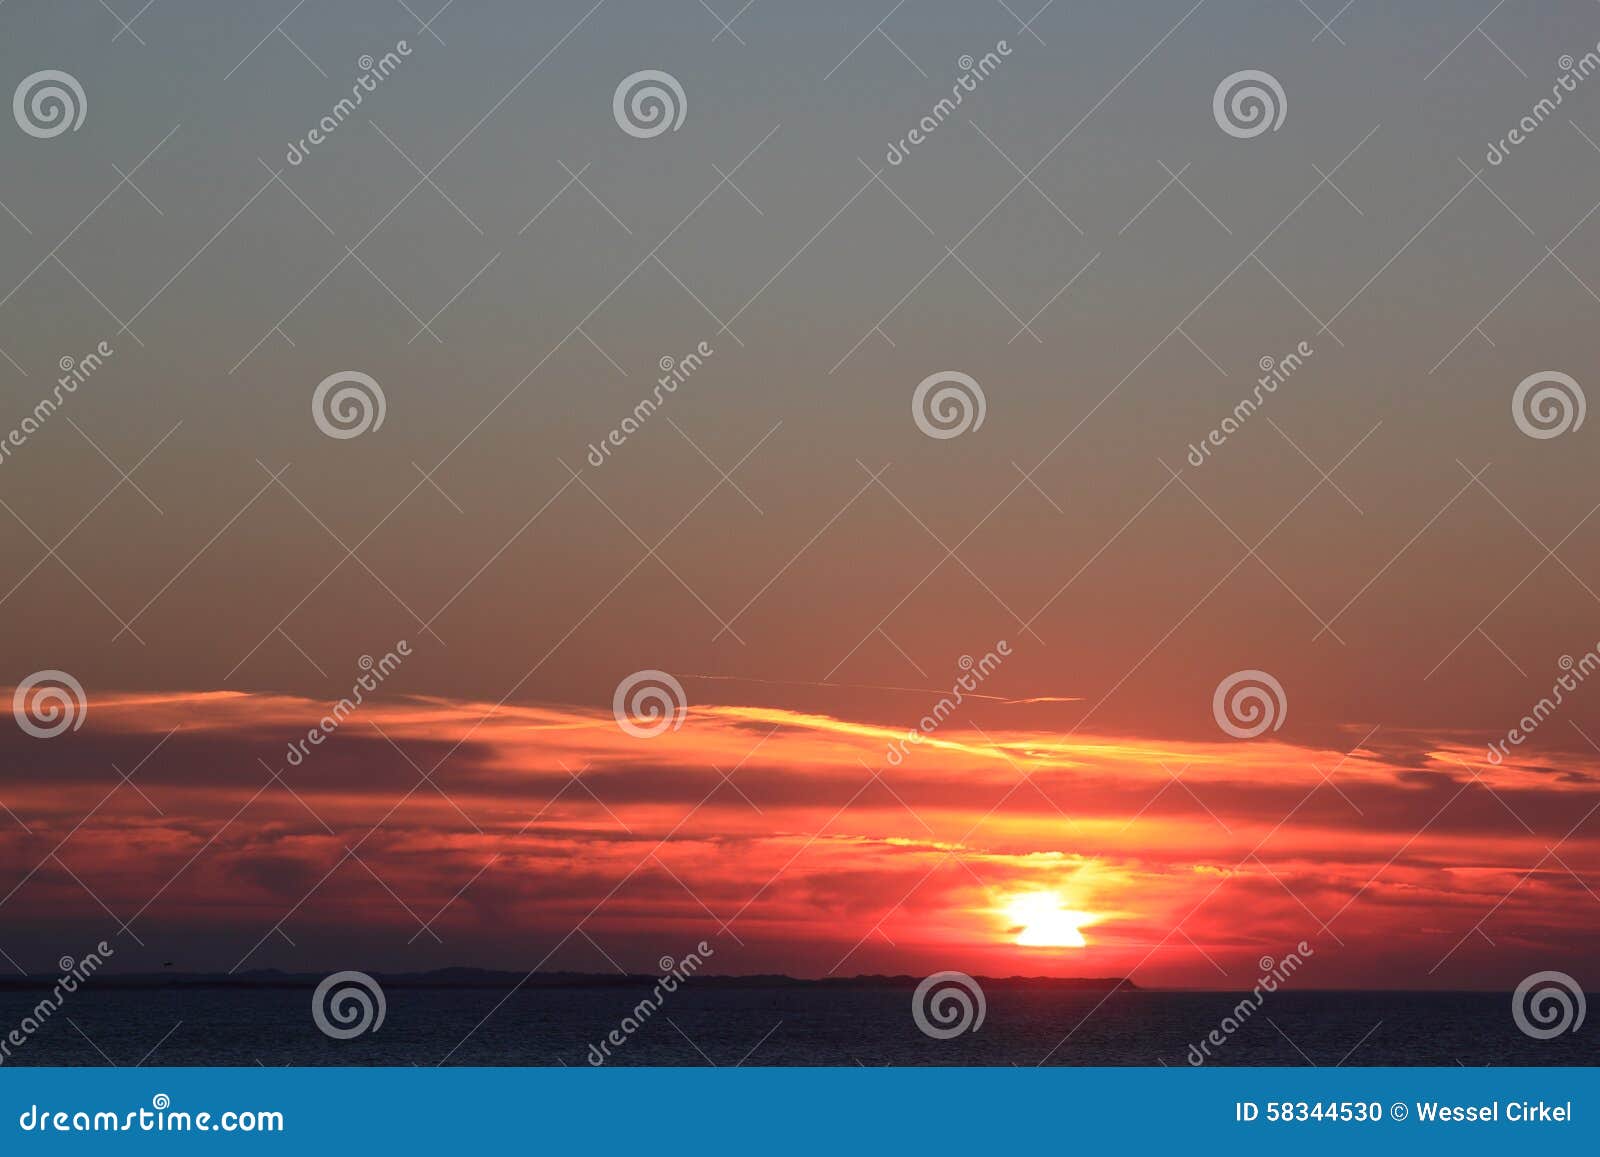 sunset at ameland island, the netherlands